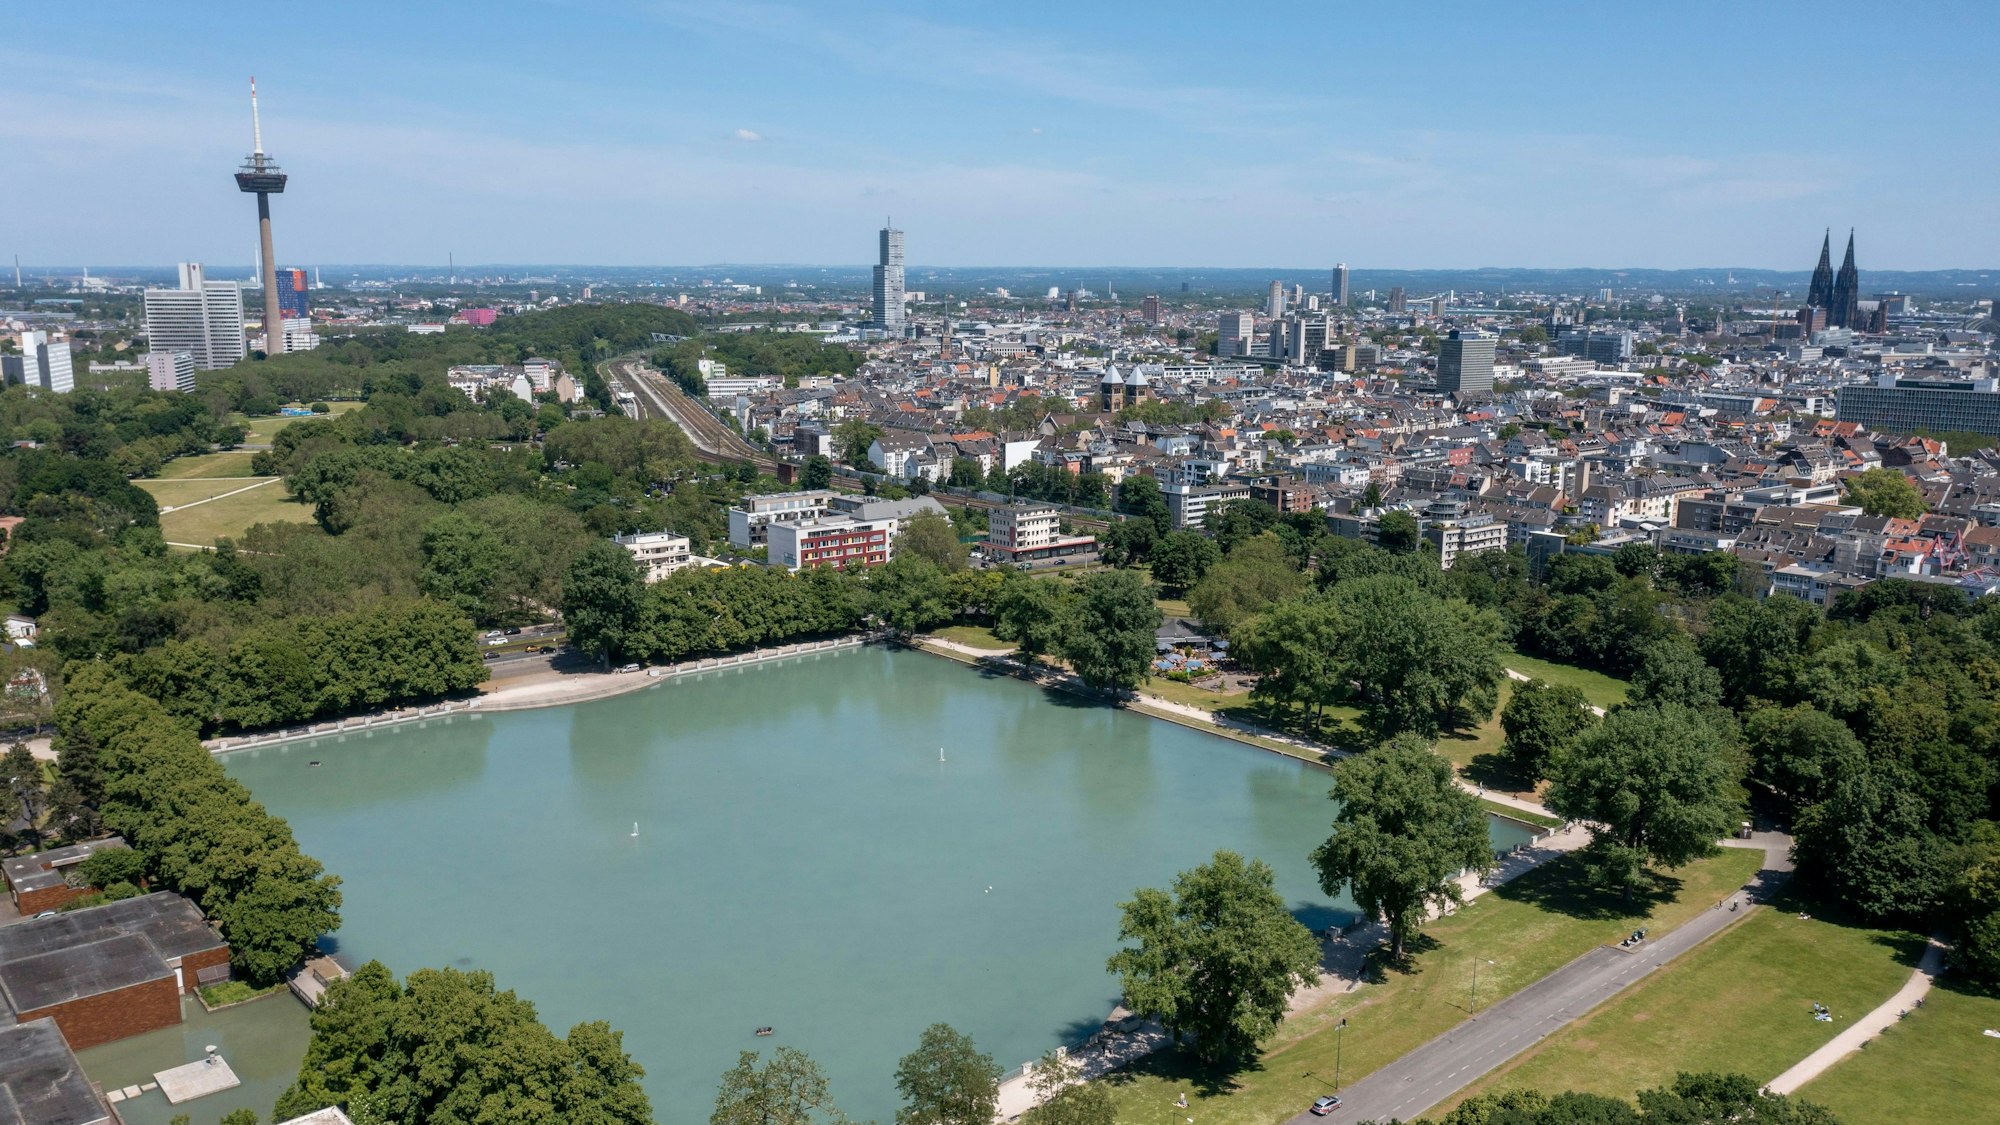 Der Aachener Weiher und das Stadtpanorama. Im Hintergrund sind der Colonius, der Köln-Tower im Mediapark und der Kölner Dom zu erkennen.